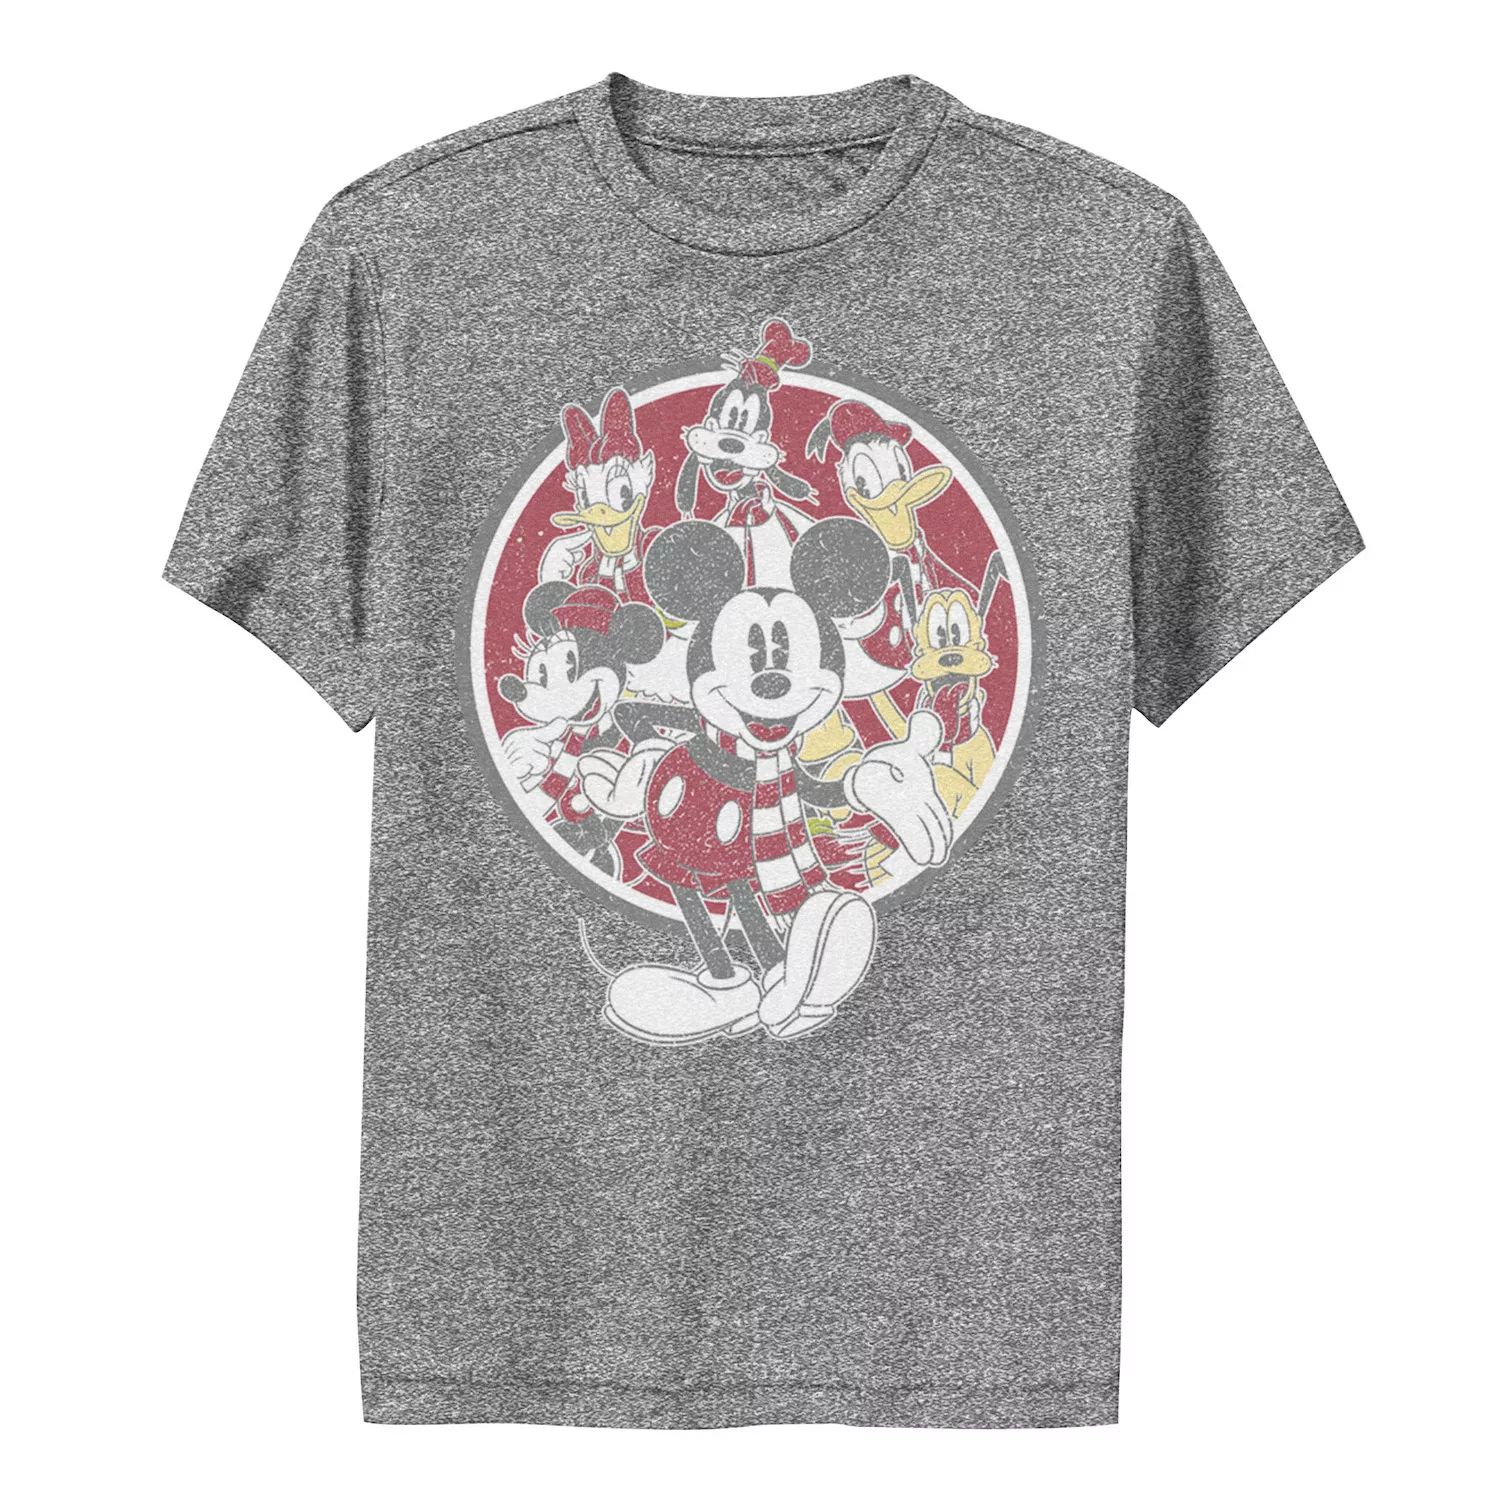 Футболка с графическим рисунком и логотипом Disney для мальчиков 8–20 лет «Микки Маус и друзья» Disney базовая футболка disney с логотипом disney для мальчиков 8–20 лет и графическим рисунком disney